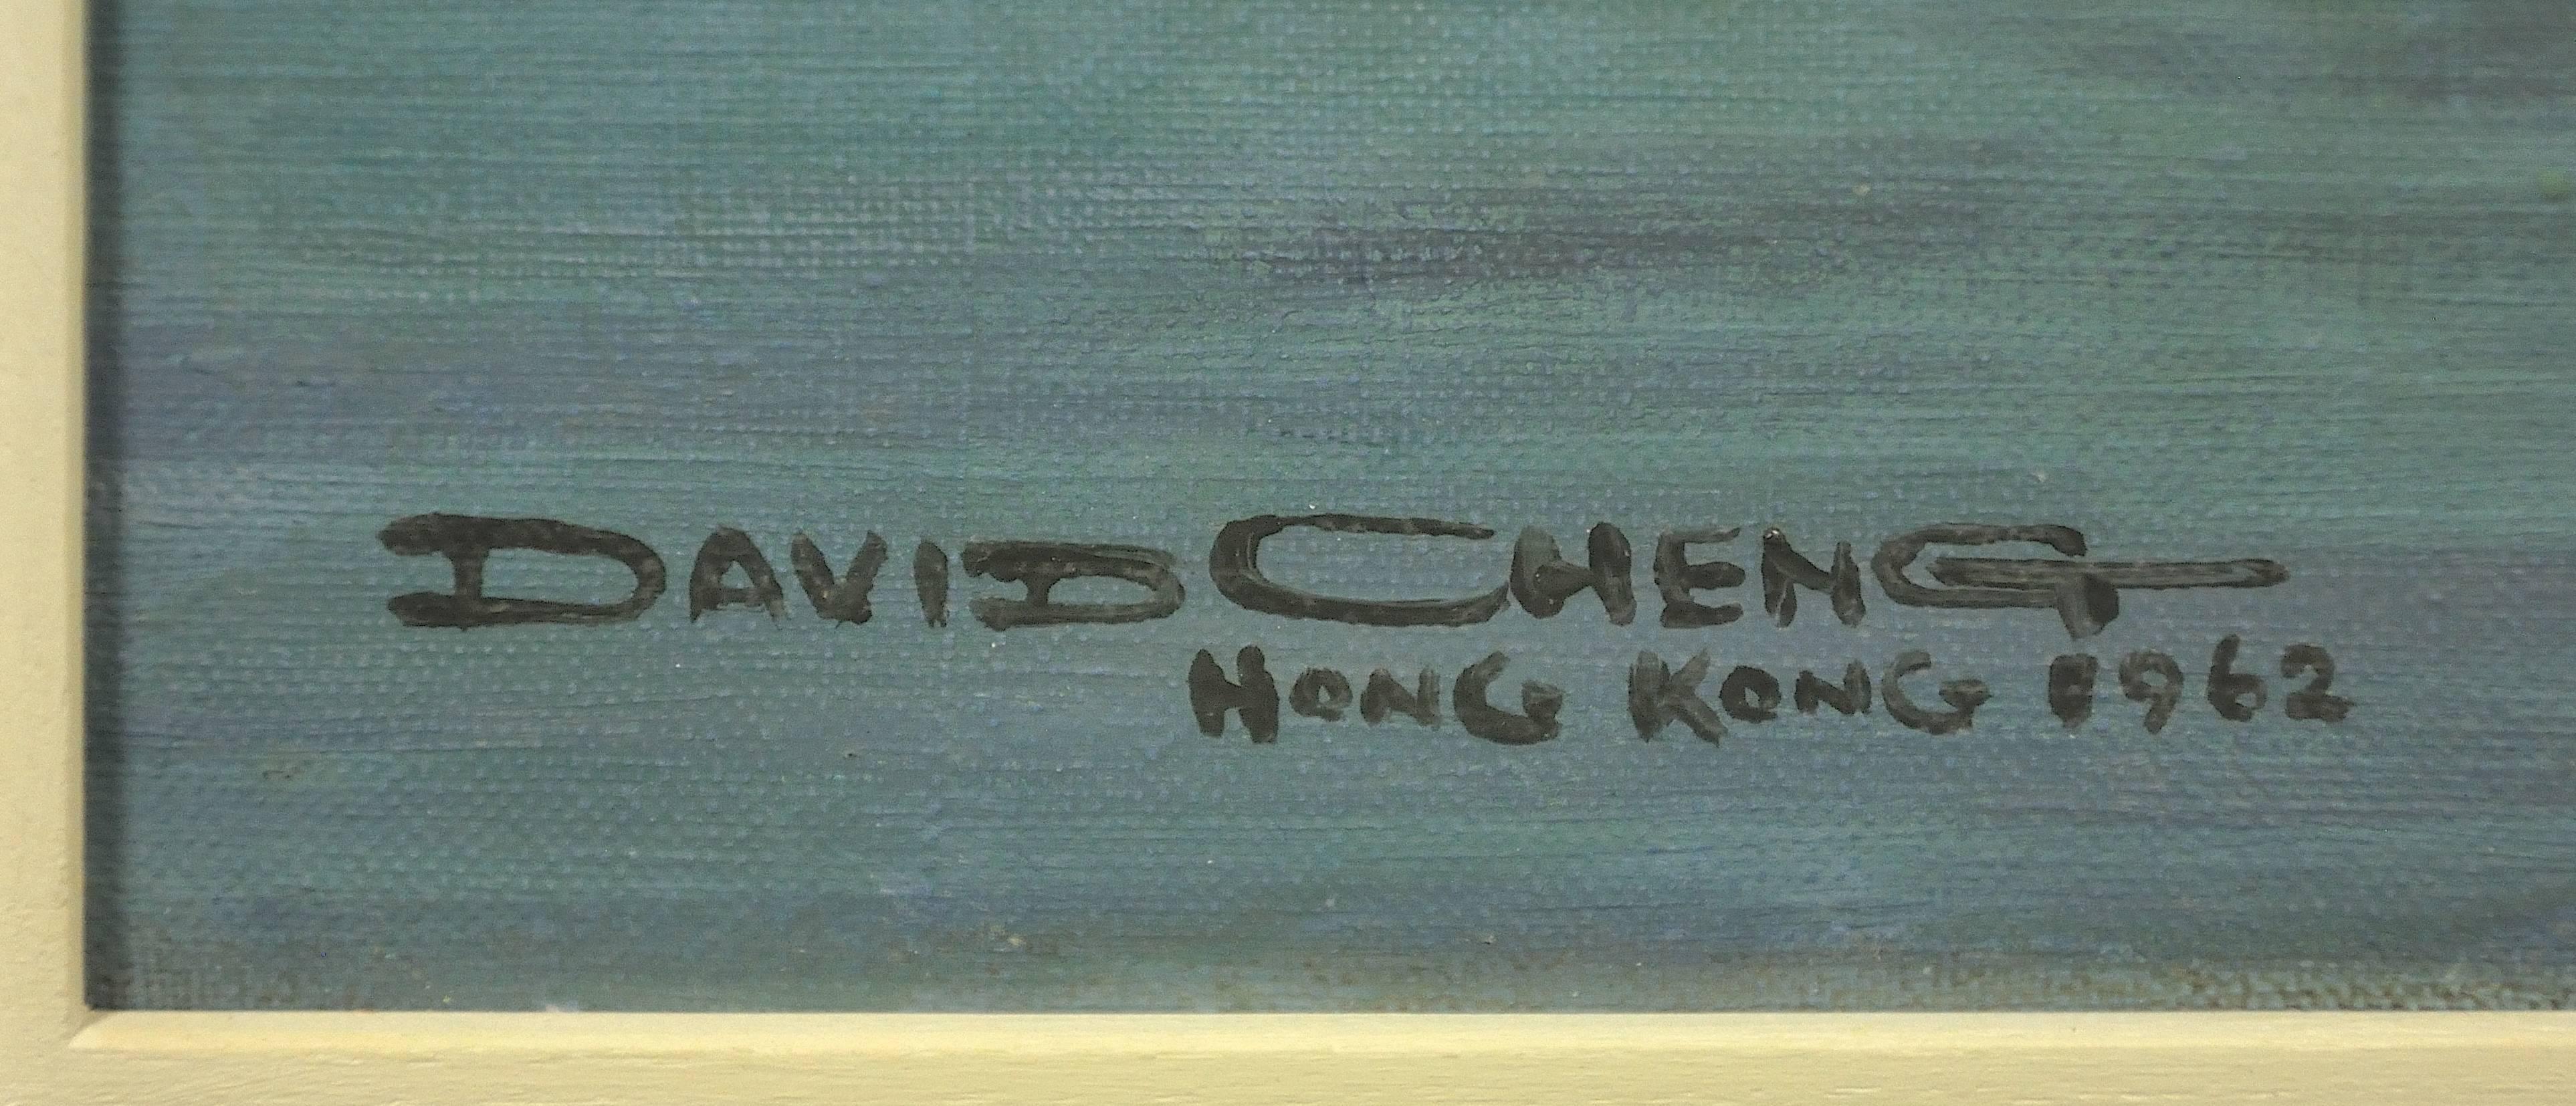 david cheng artist